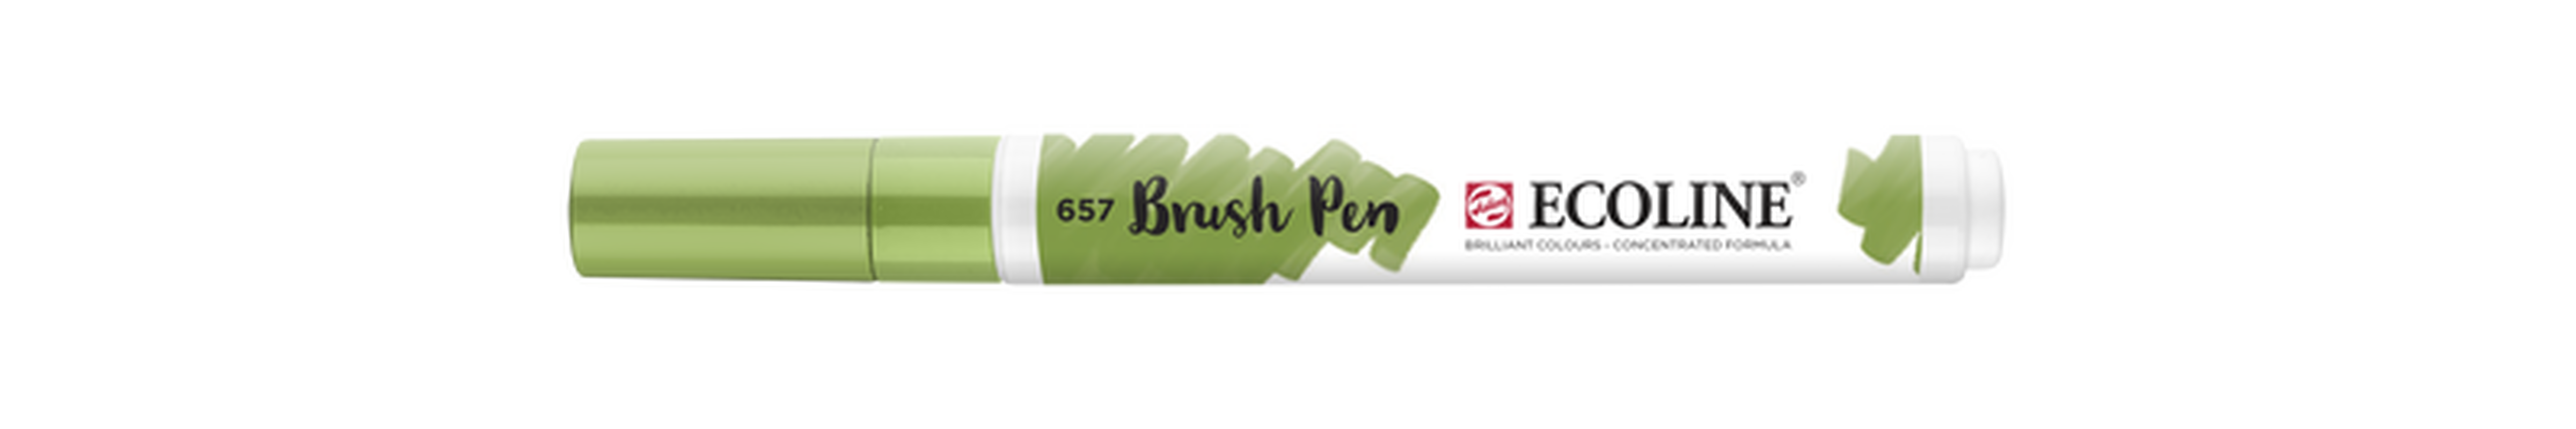 Talens Brush Pen Ecoline Number 657 Color Bronze Green